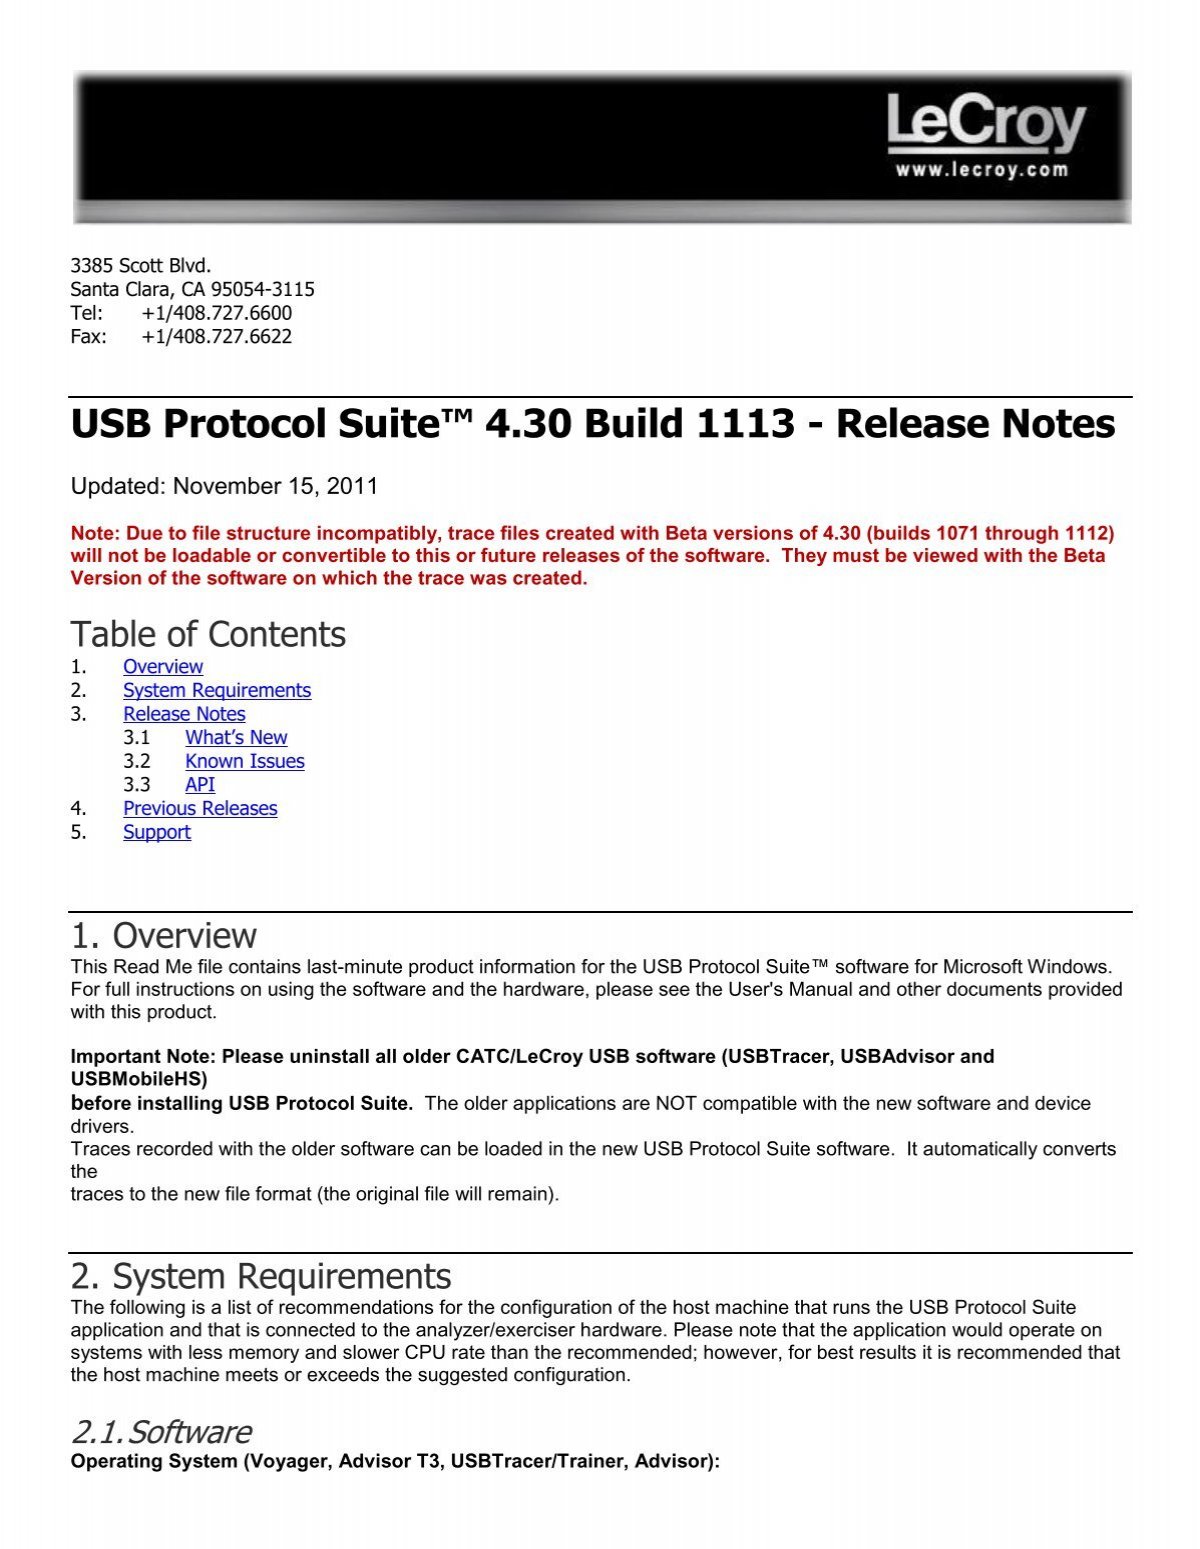 Fisker filthy Afskedigelse USB Protocol Suite ™ Release Notes - Teledyne LeCroy